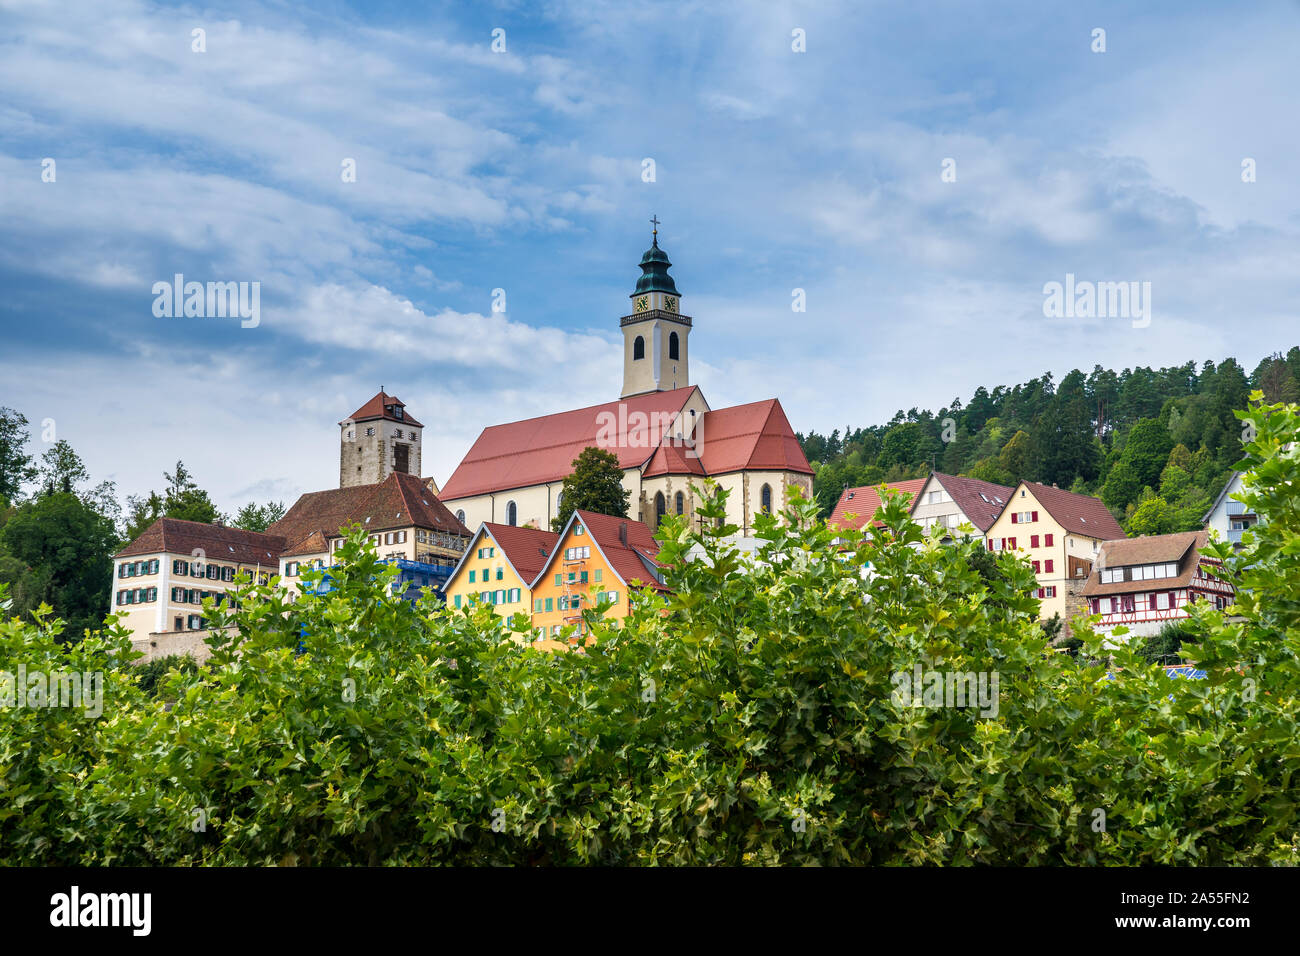 Deutschland, schöne Kathedrale und Altstadt Häuser von Schwarzwälder Dorf Horb am Neckar von grünen Bäumen mit blauem Himmel umgeben Stockfoto